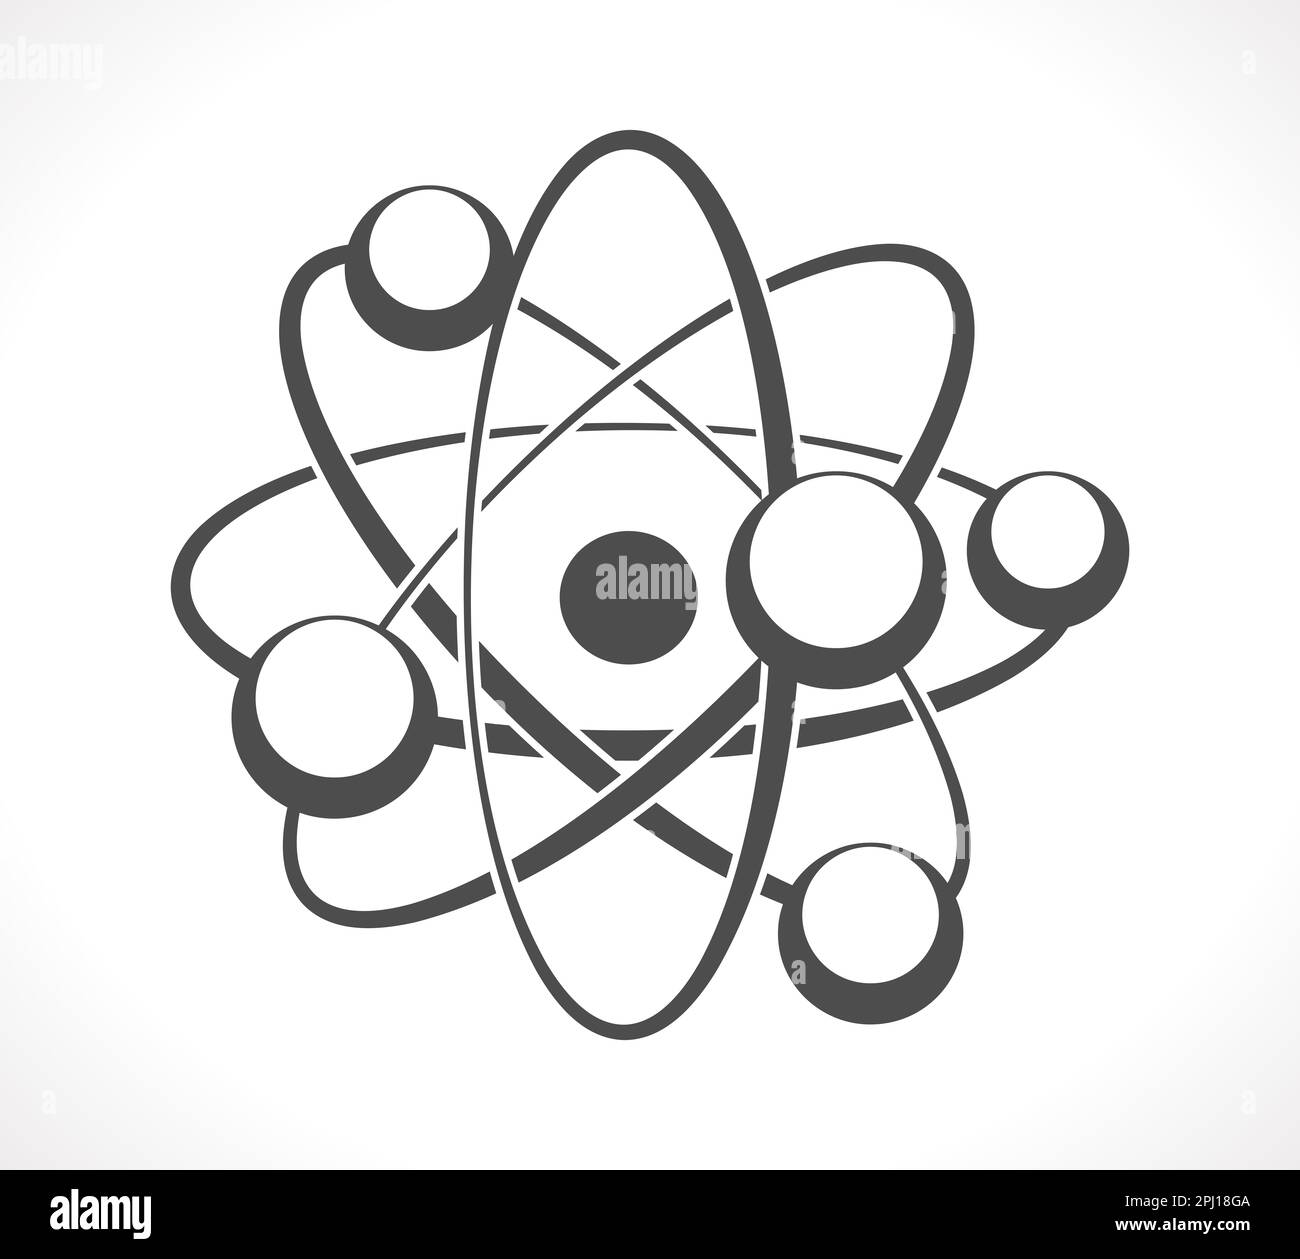 Le concept de l'atome comme une innovation dans les affaires Banque D'Images